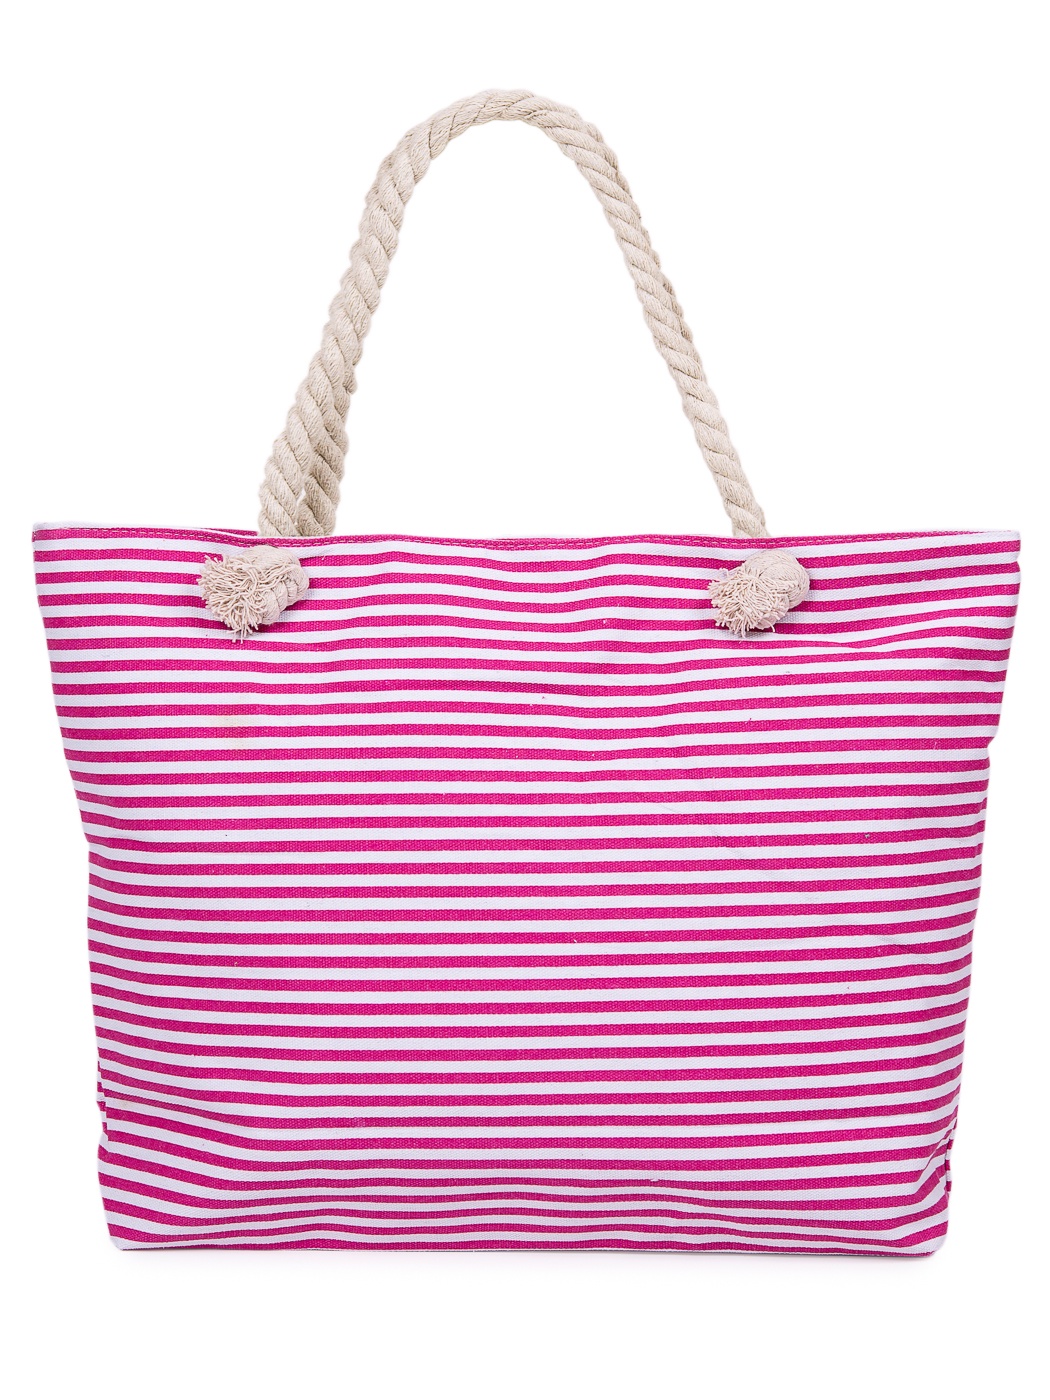 Пляжная сумка Nuages NS4606, розовый